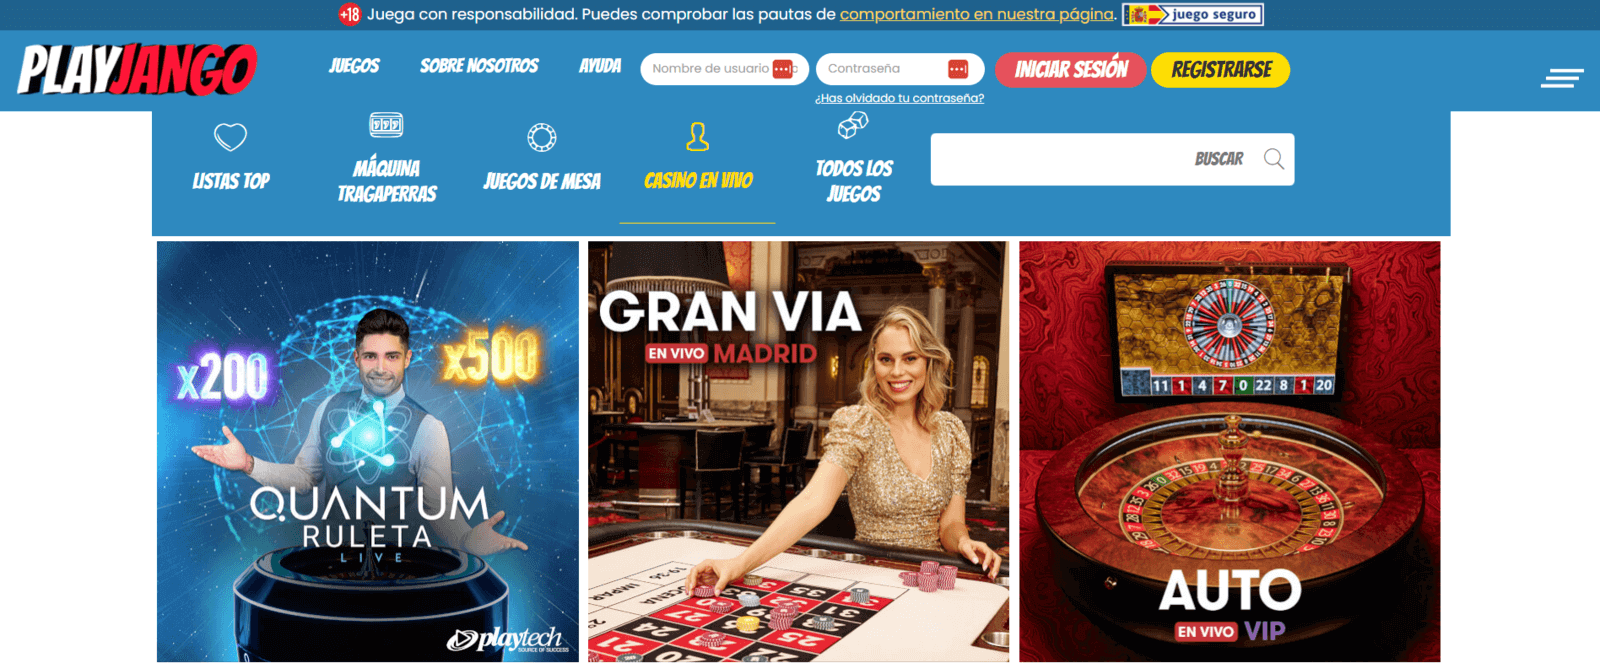 Play Jango   juegos casino PlayJango en vivo online en España